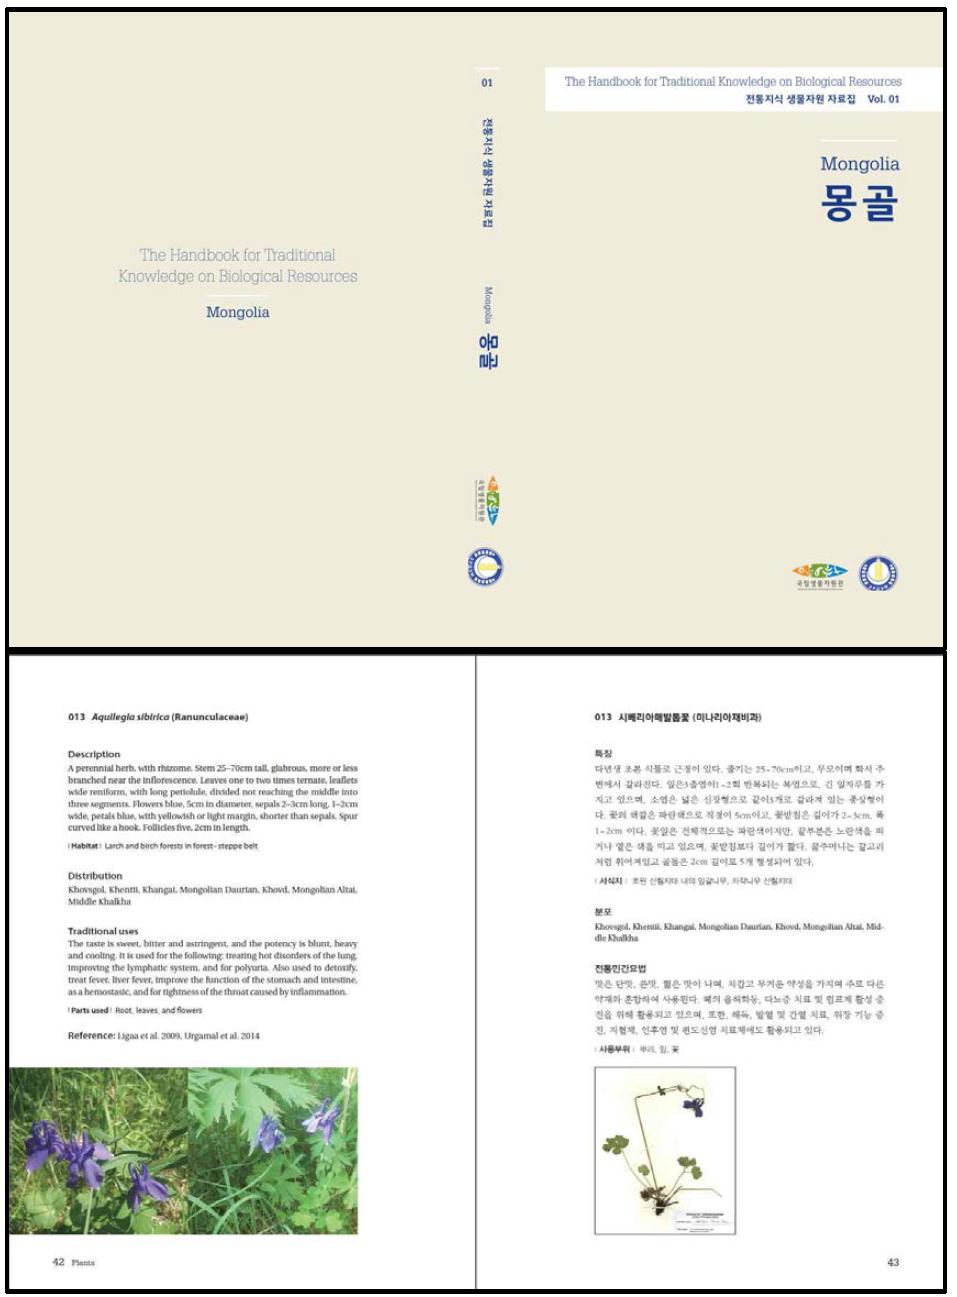 몽골 전통지식 생물자원 자료집 표지(위), 내용(아래)